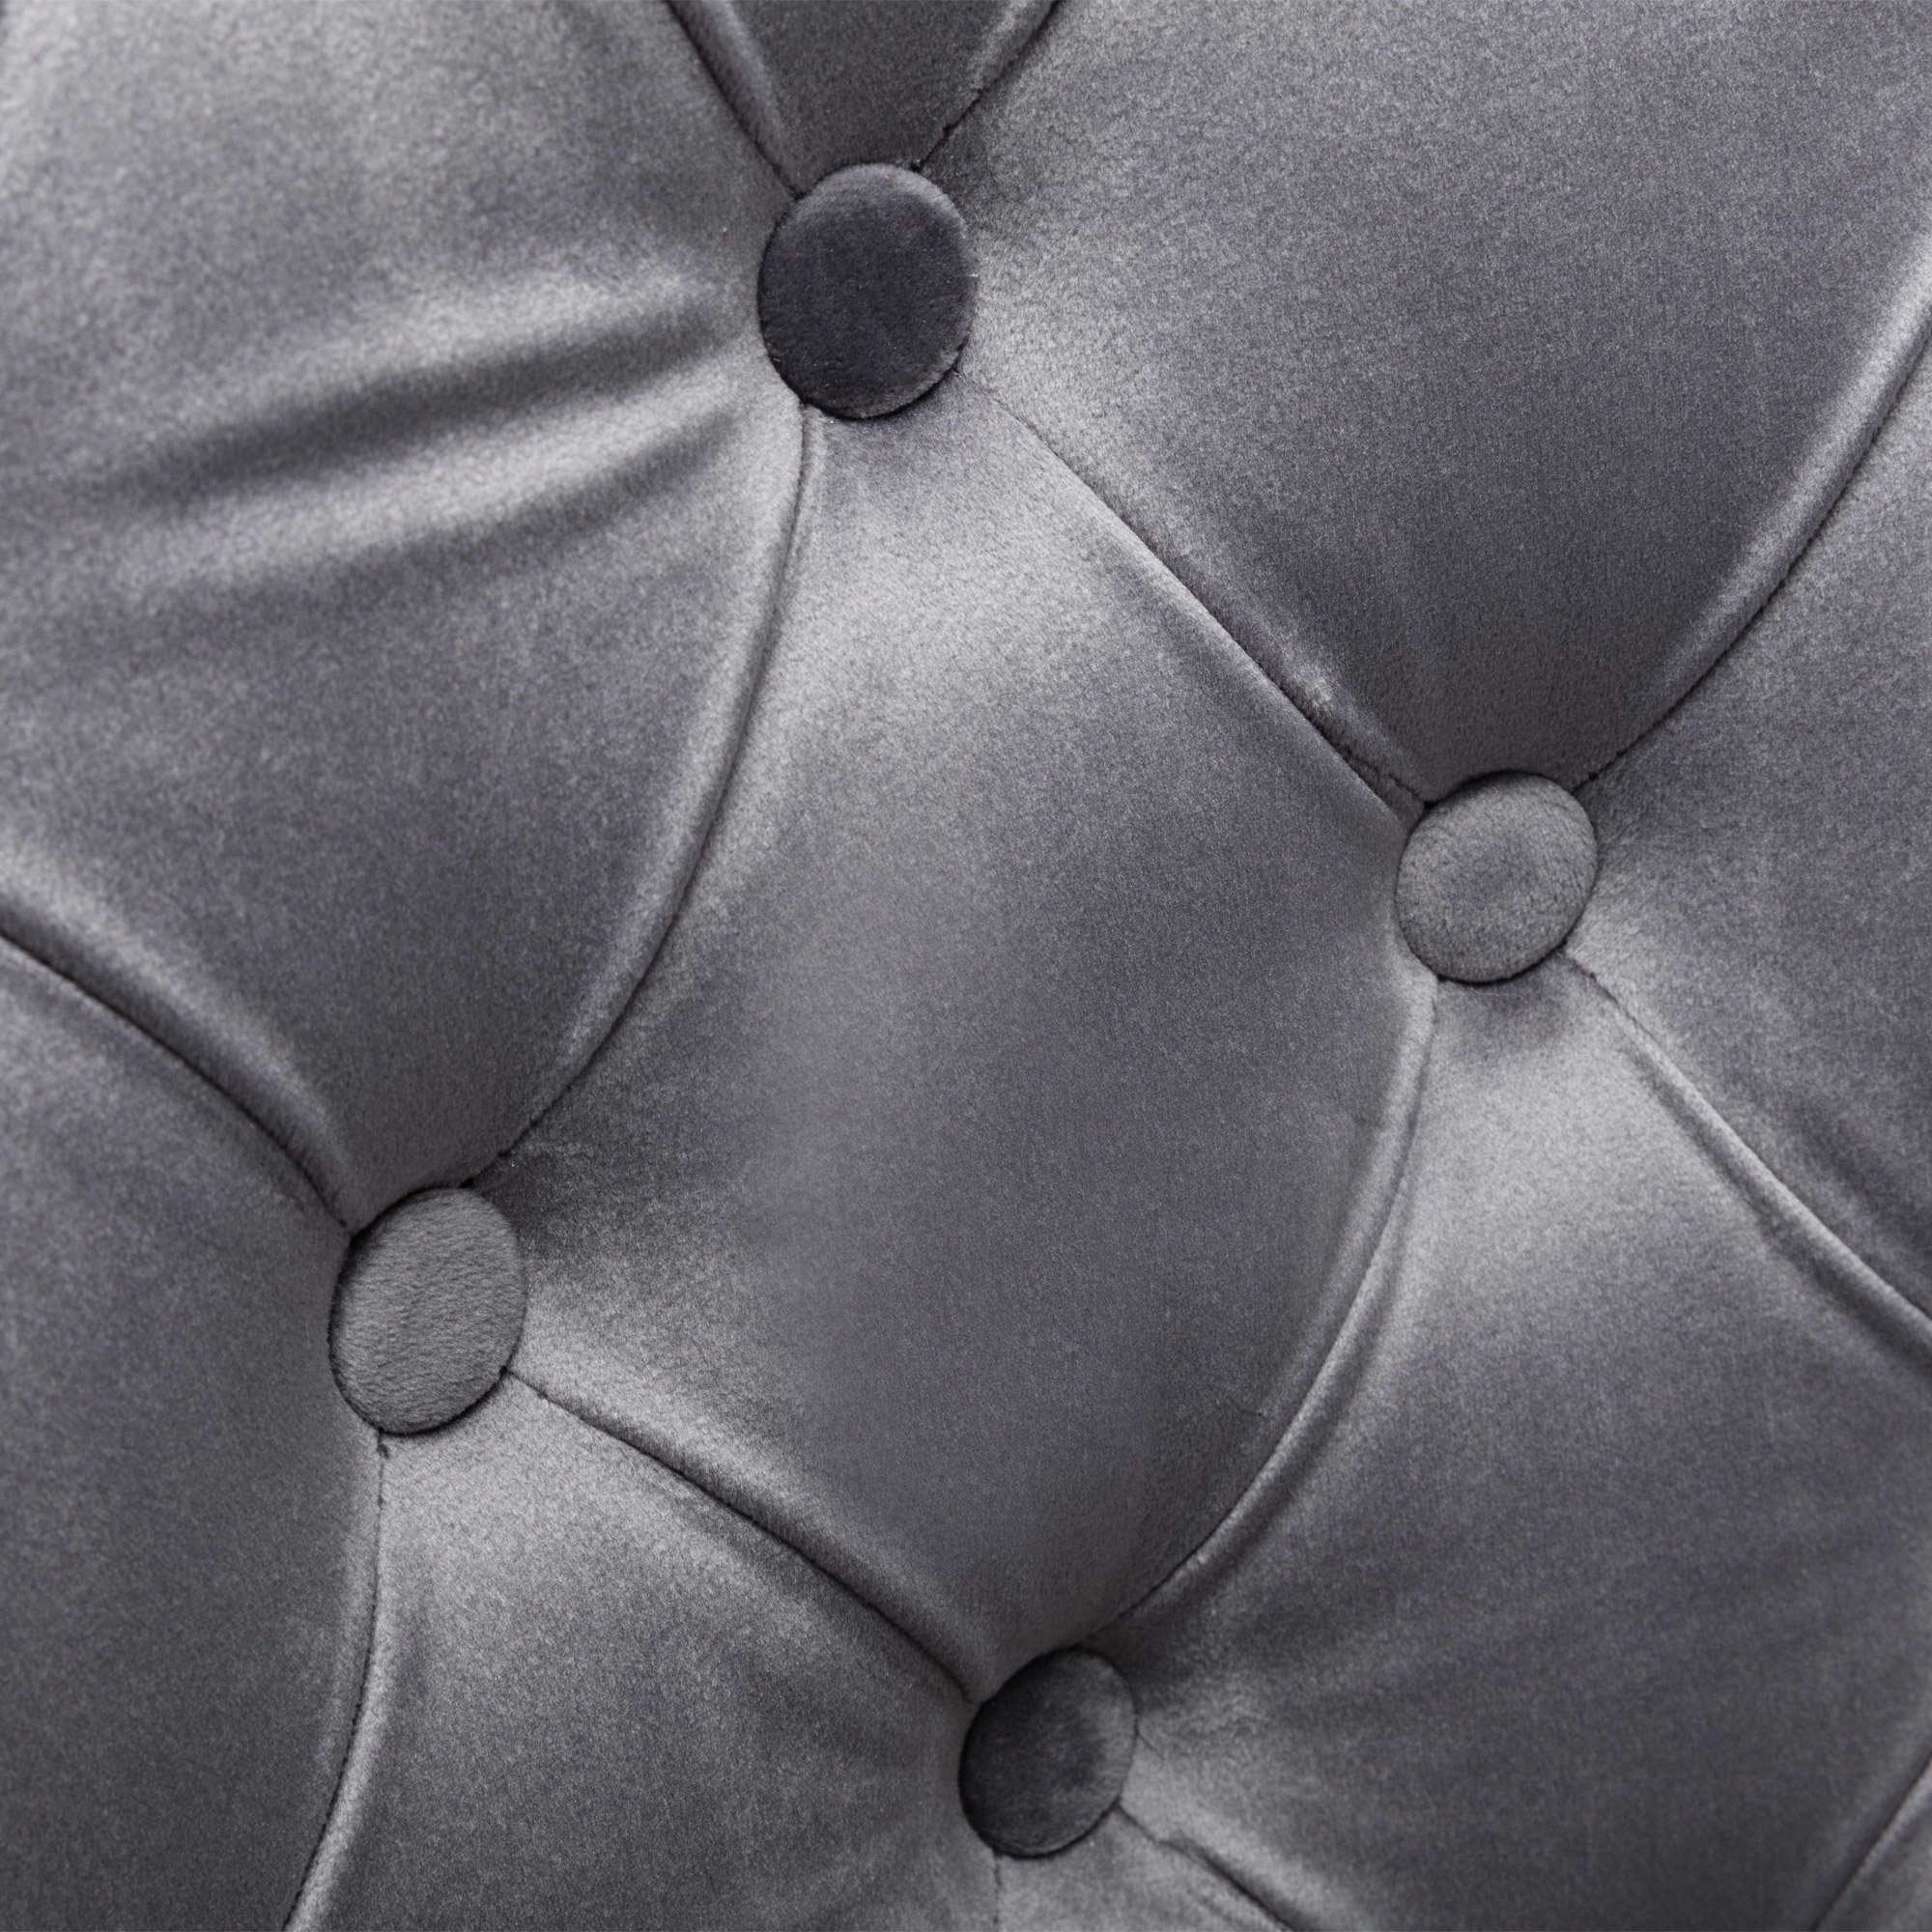 St), grau Eichenbeinen (2 Stuhl Esszimmerstuhl Flieks und Nagelkopfbesatz mit Samt